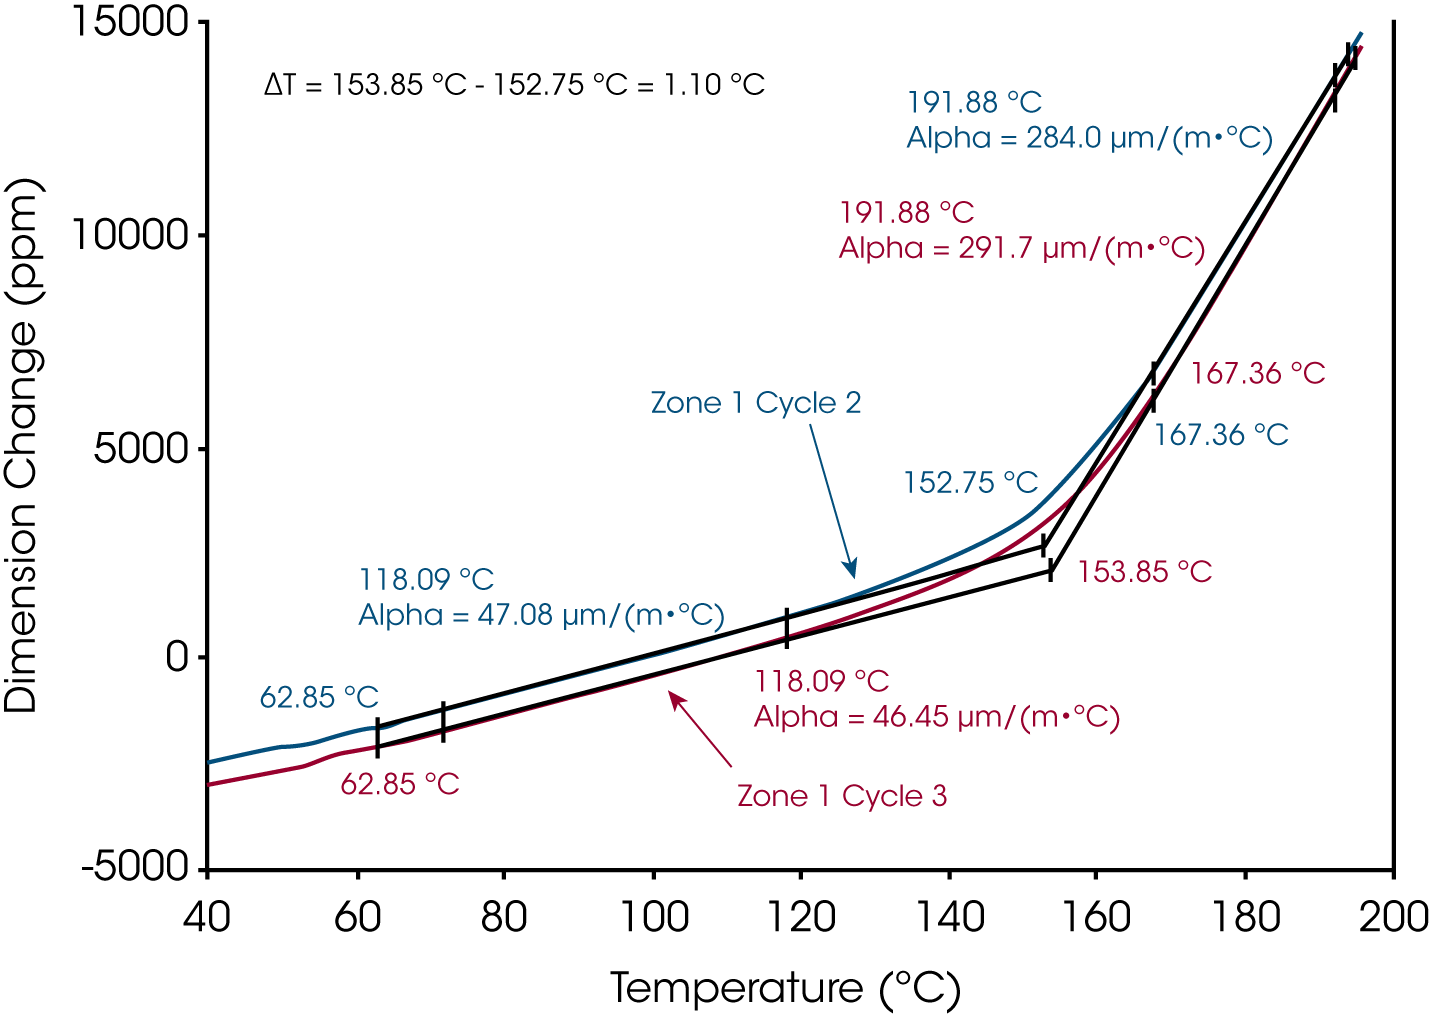 Figure 2. Calcul du CTE, de la Tg et du Delta Tg à partir des données de la Zone 1